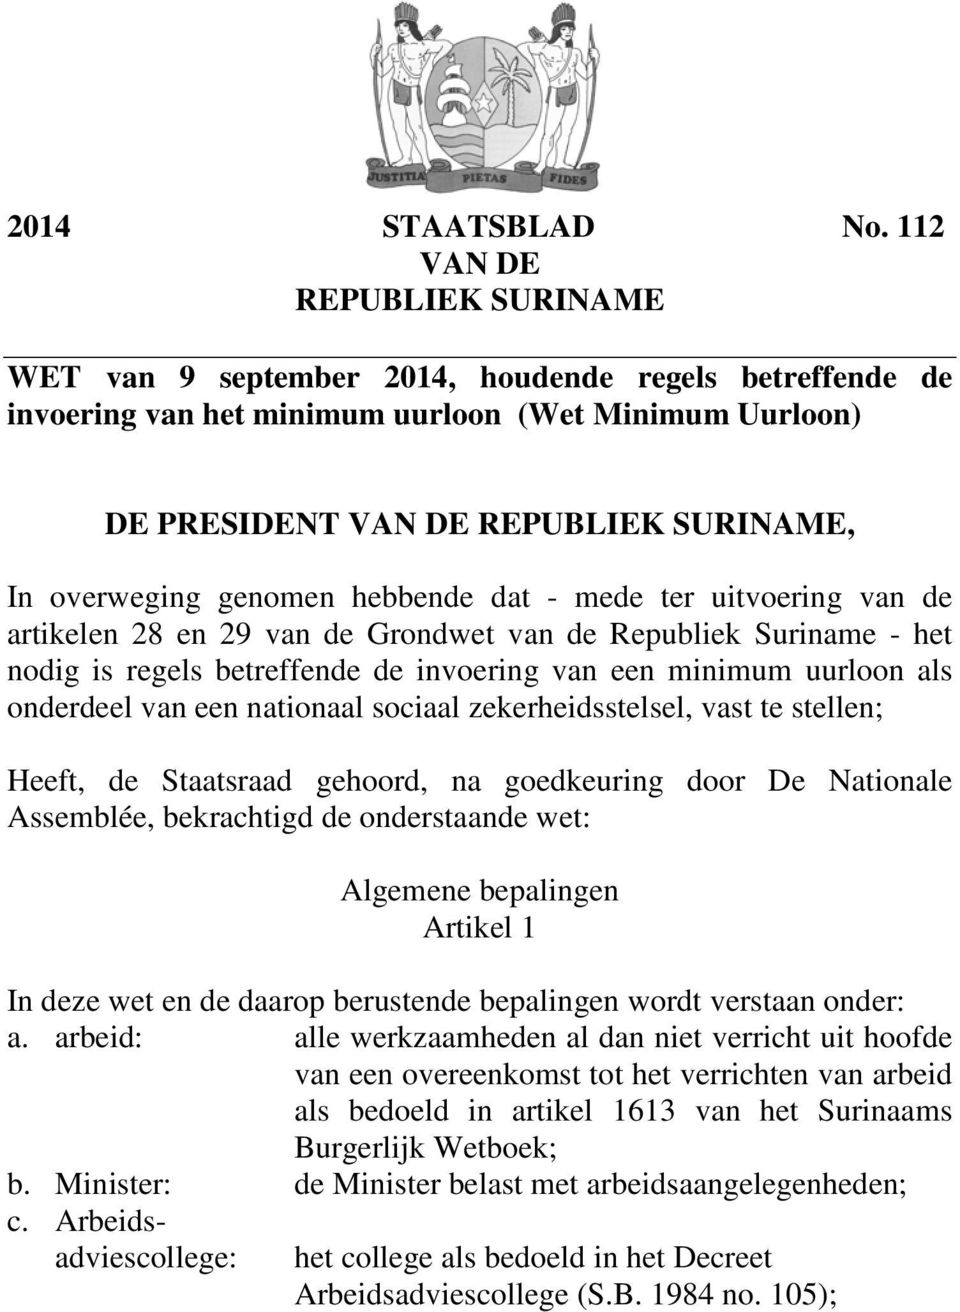 genomen hebbende dat - mede ter uitvoering van de artikelen 28 en 29 van de Grondwet van de Republiek Suriname - het nodig is regels betreffende de invoering van een minimum uurloon als onderdeel van